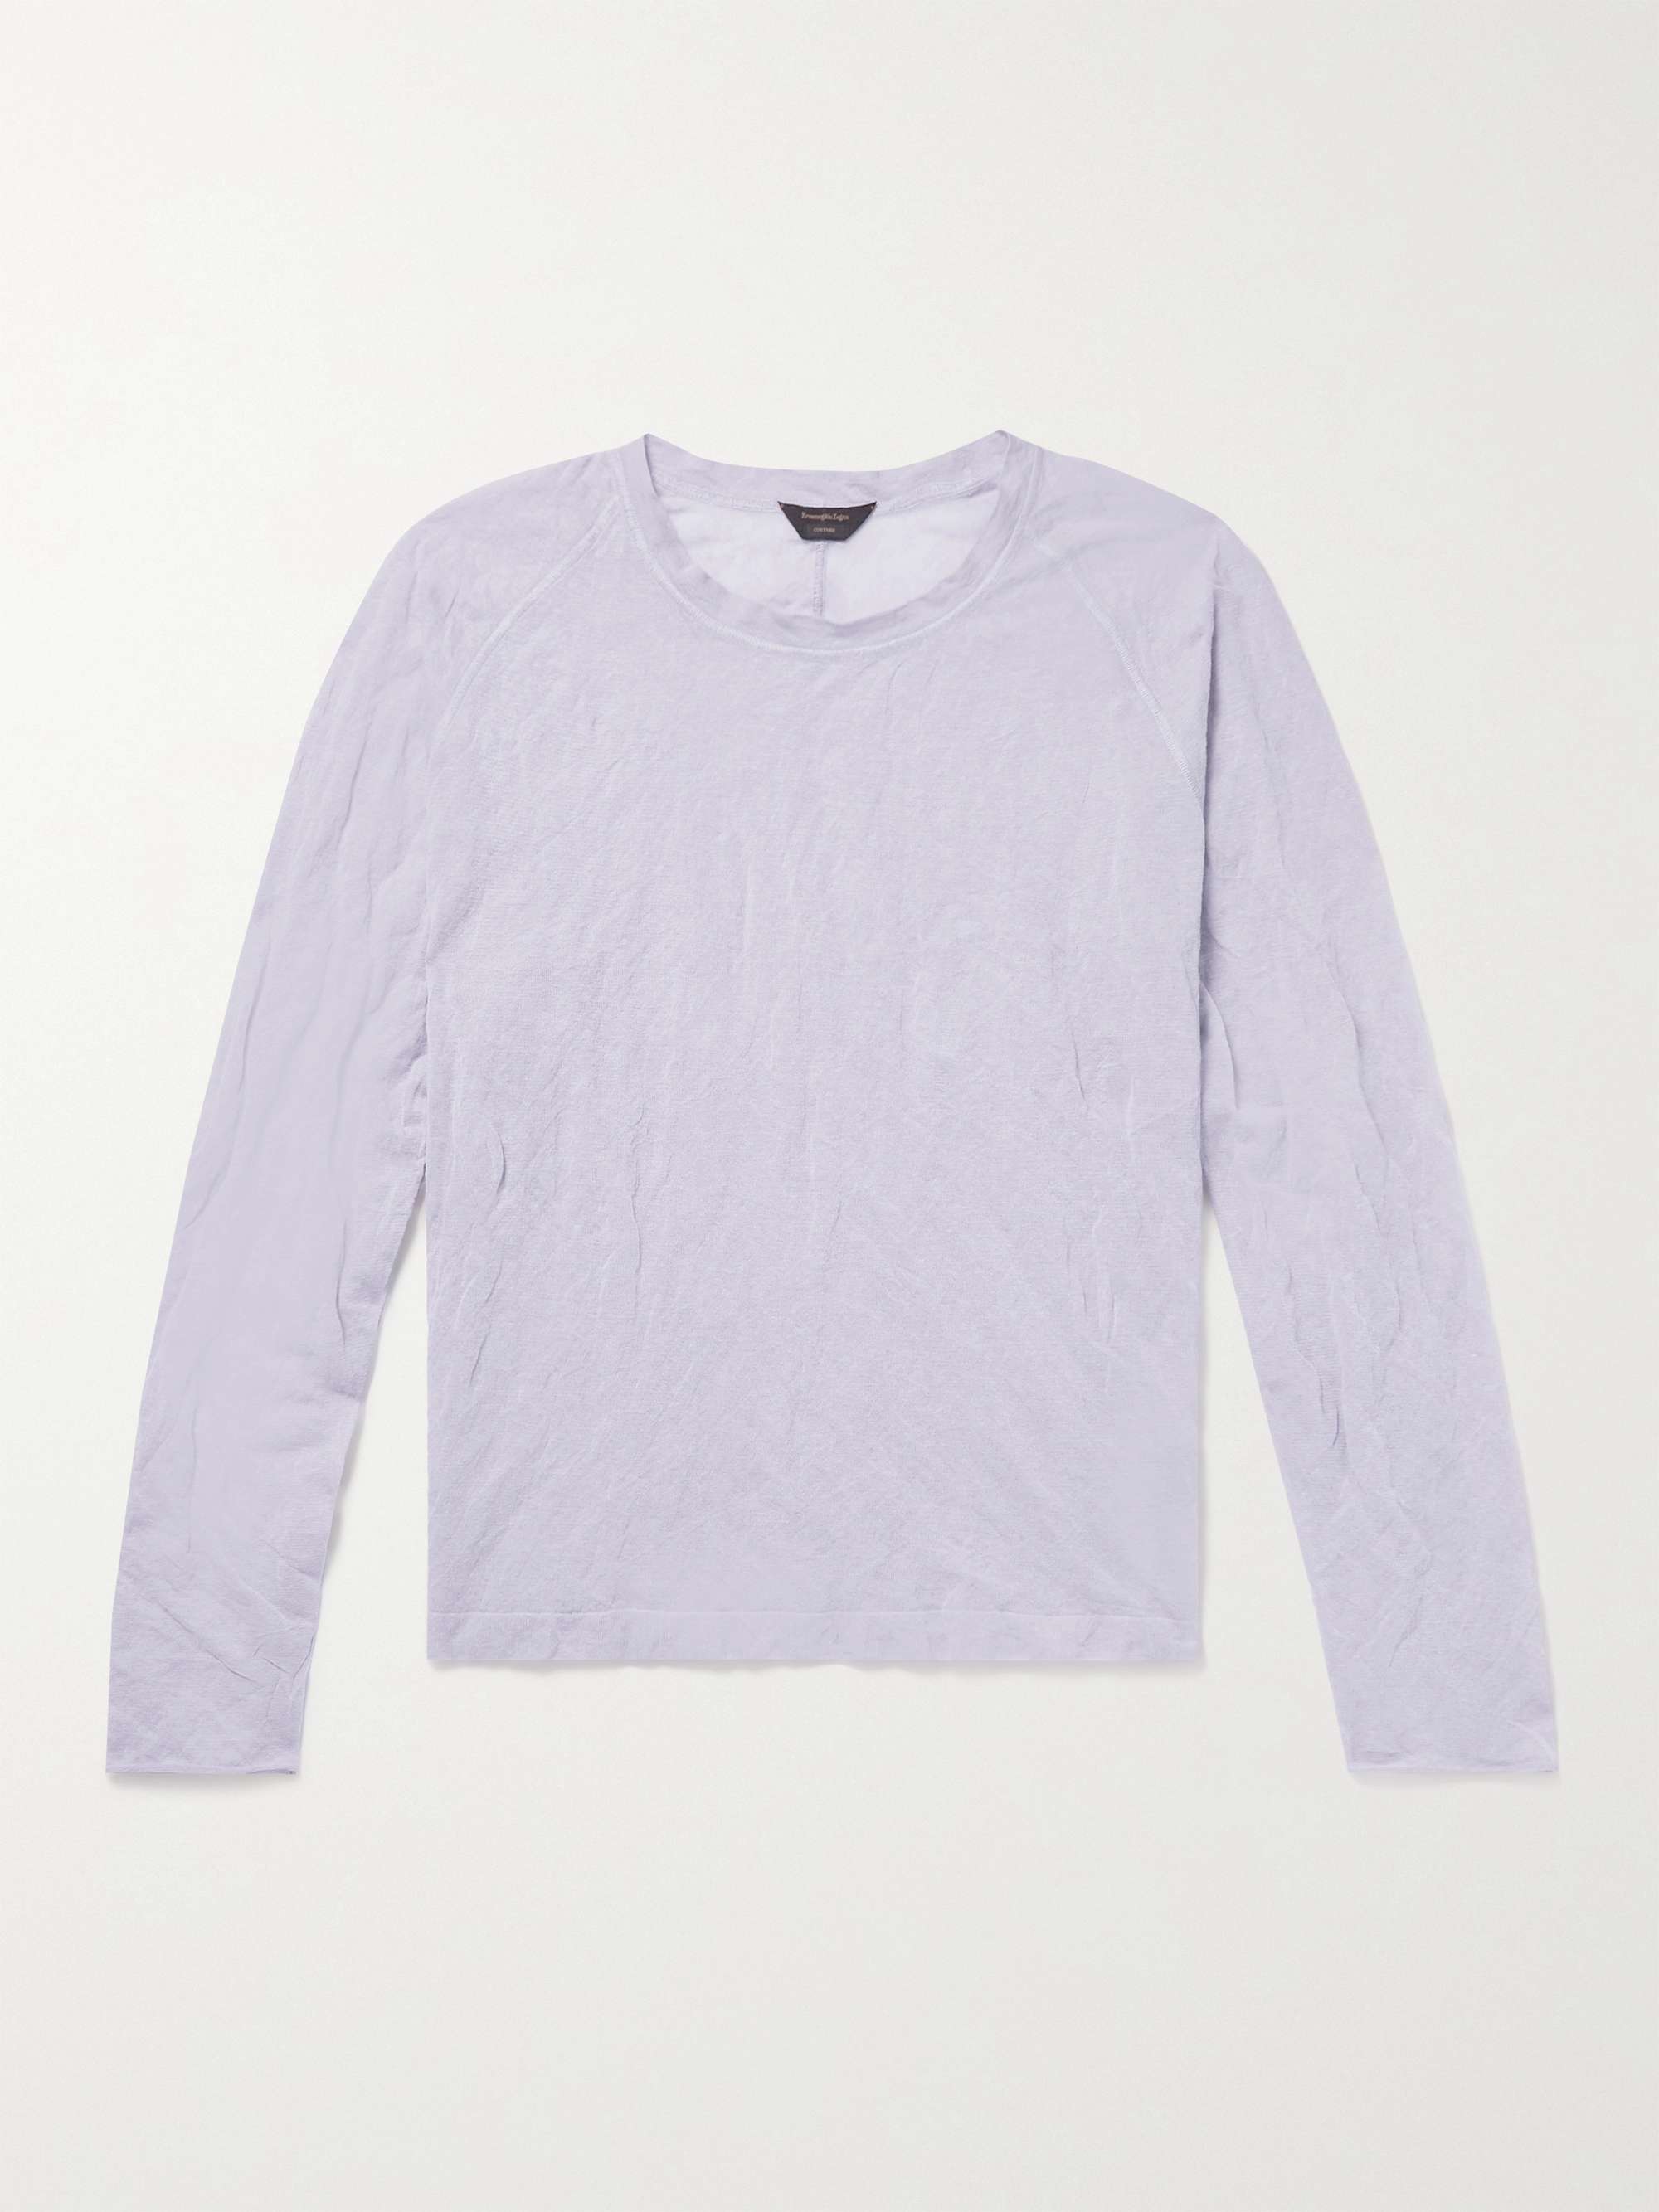 ZEGNA Crinkled Cotton-Blend T-Shirt